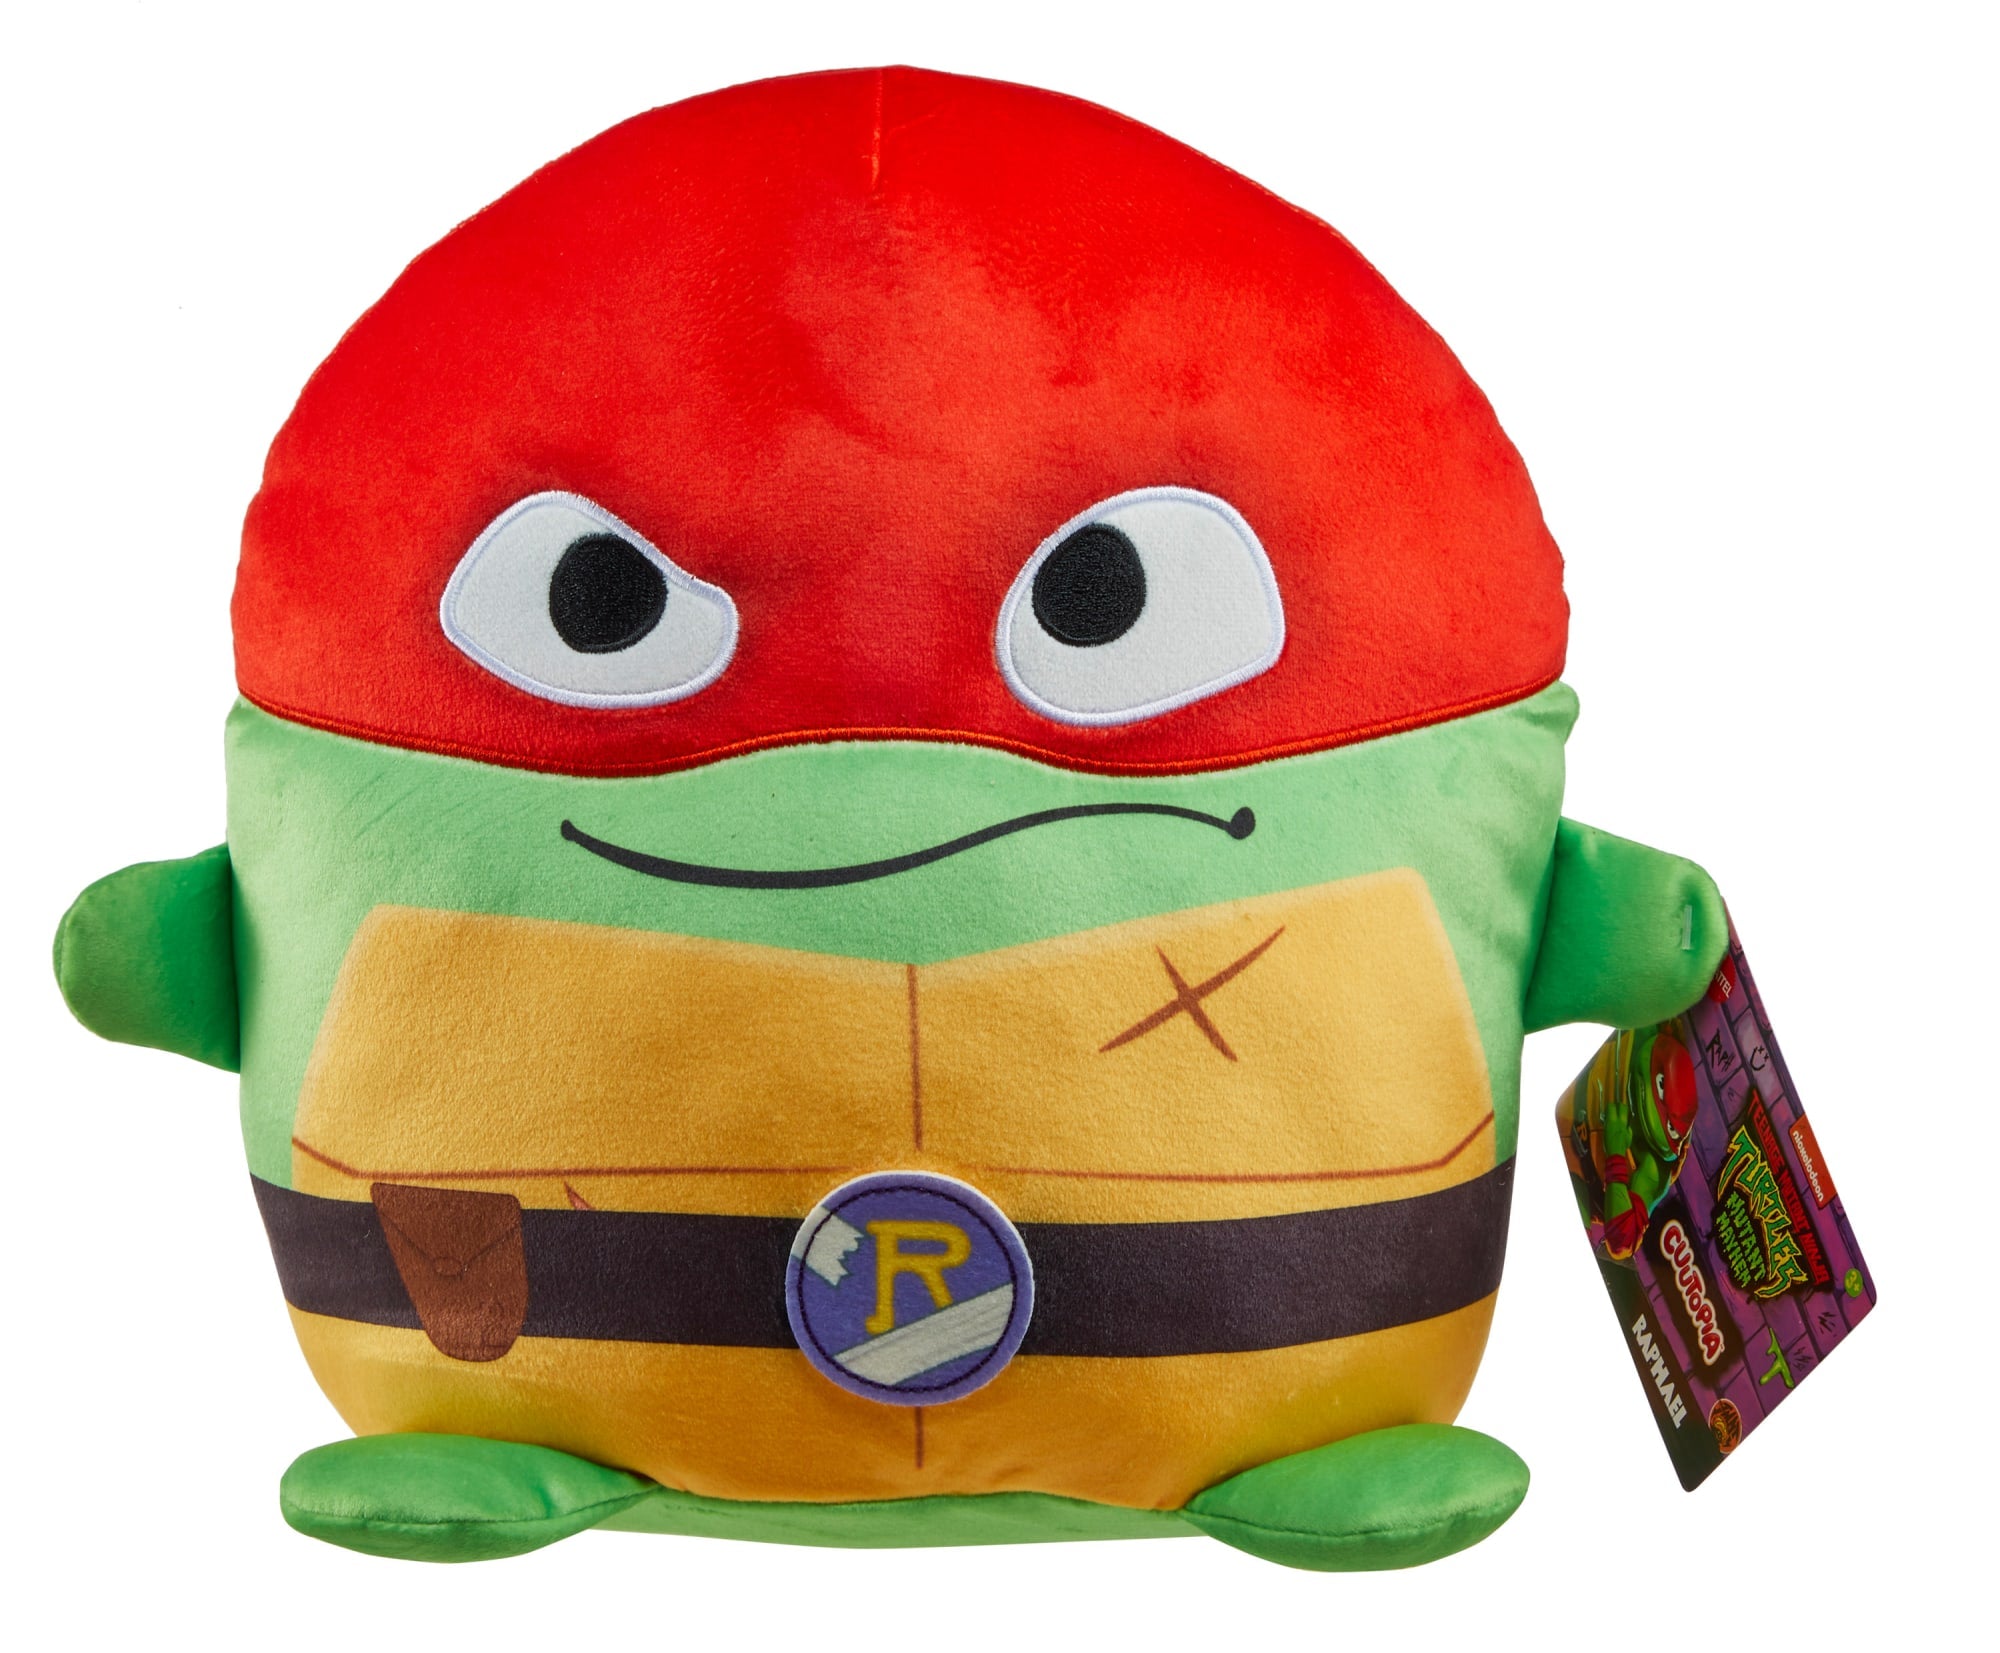 Leonardo Nickelodeon Teenage Mutant Ninja Turtle Plush Stuffed Toy 16